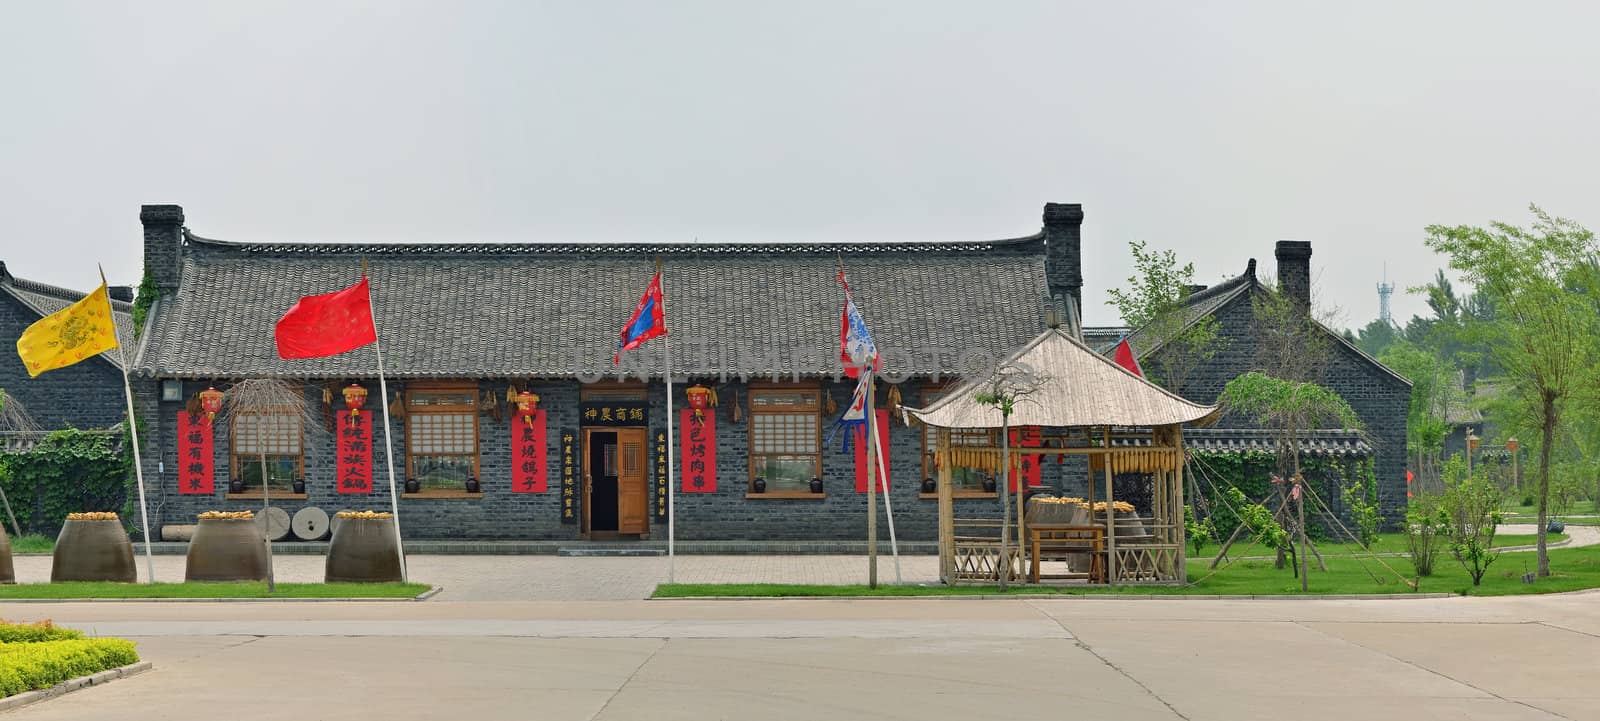 Chinese restaurant by Vectorex